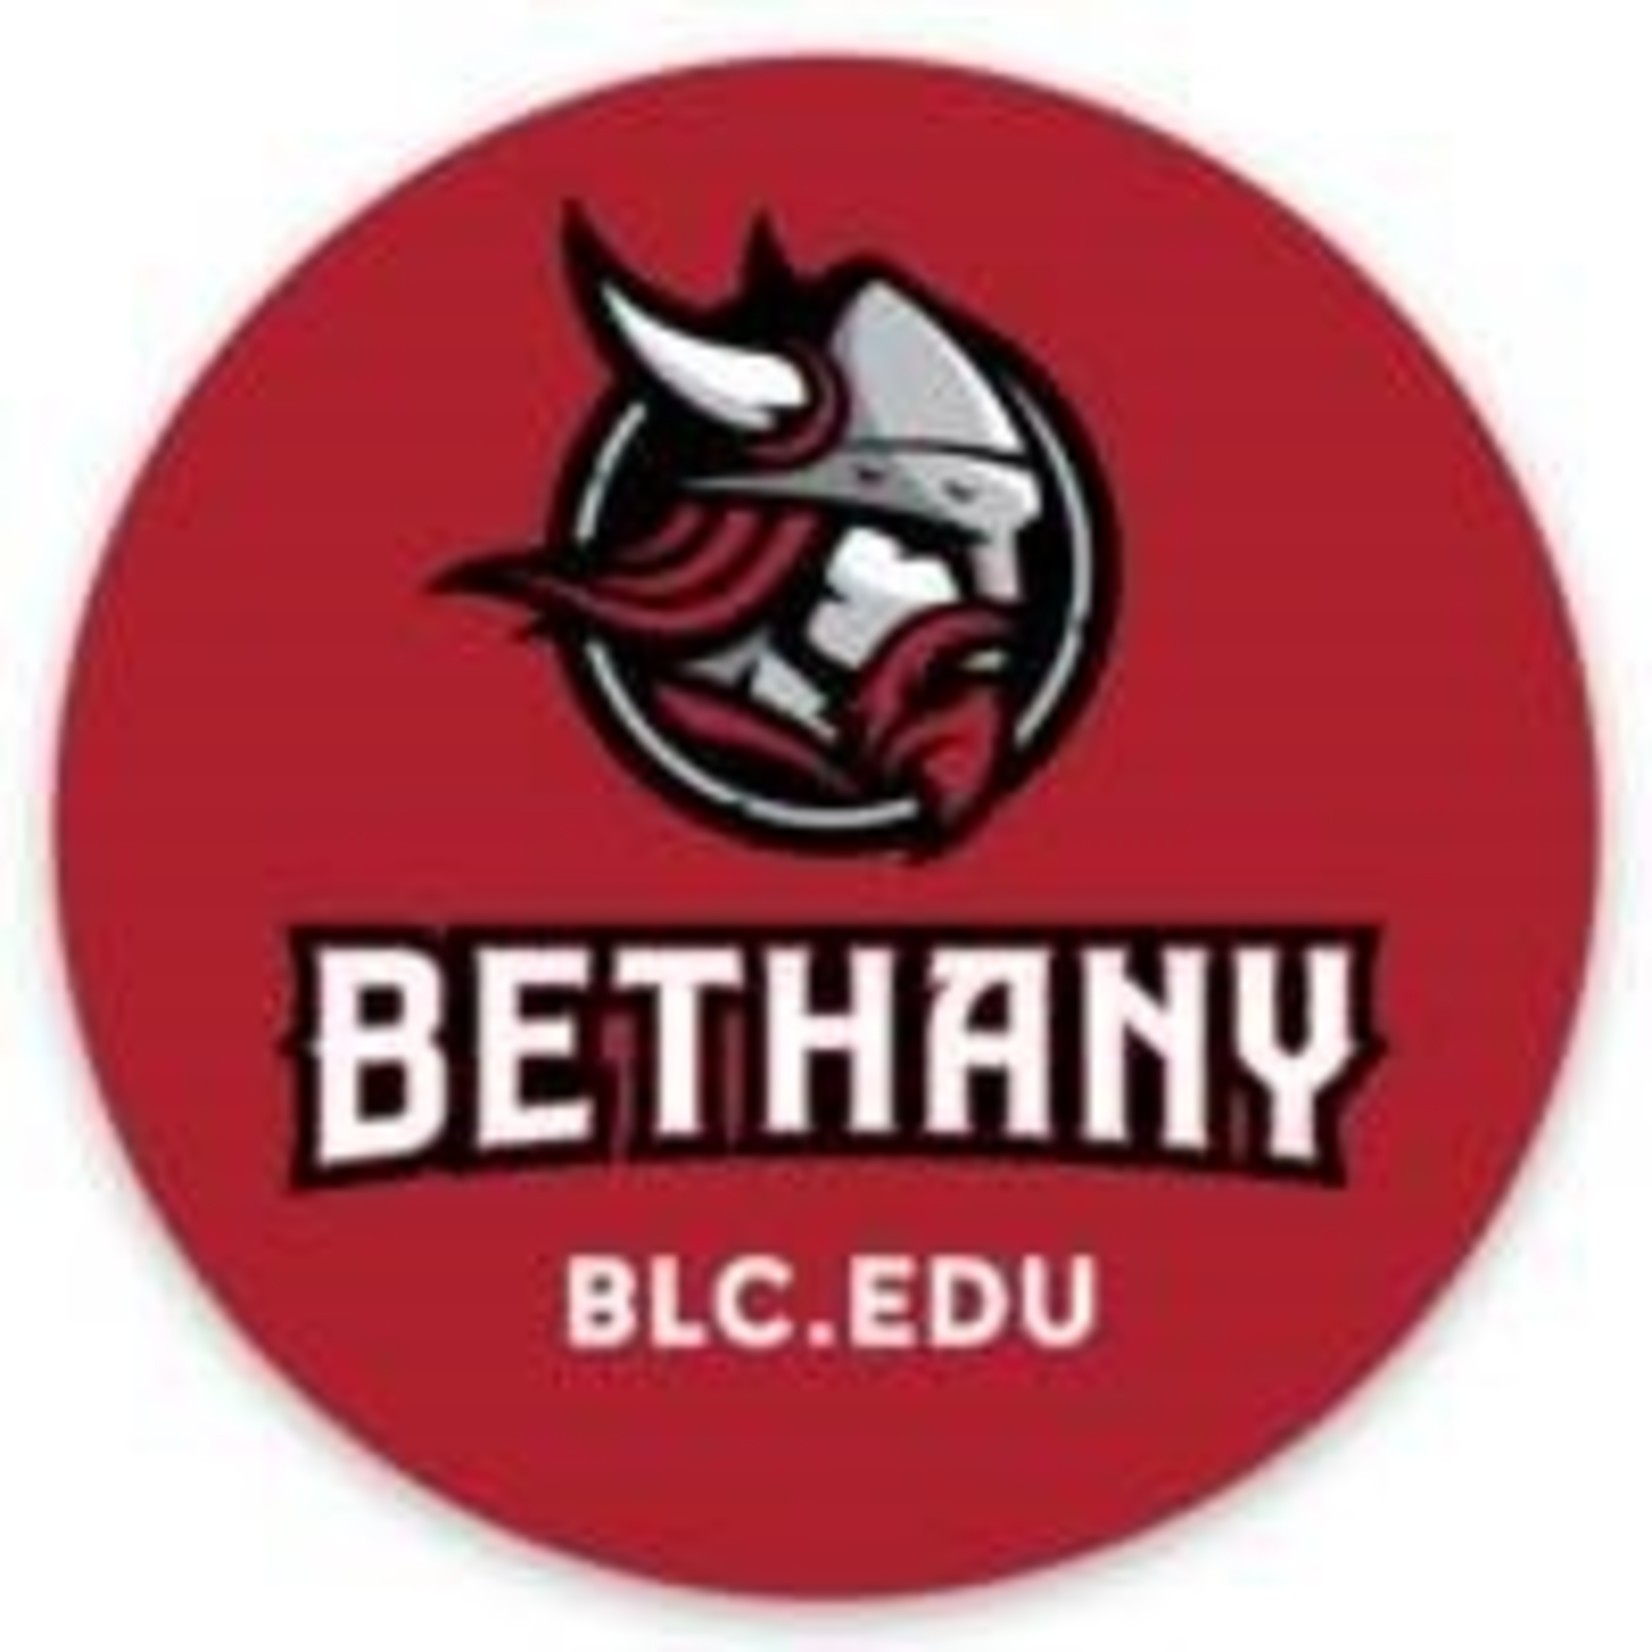 Bethany BLC.edu Round Sticker - Red